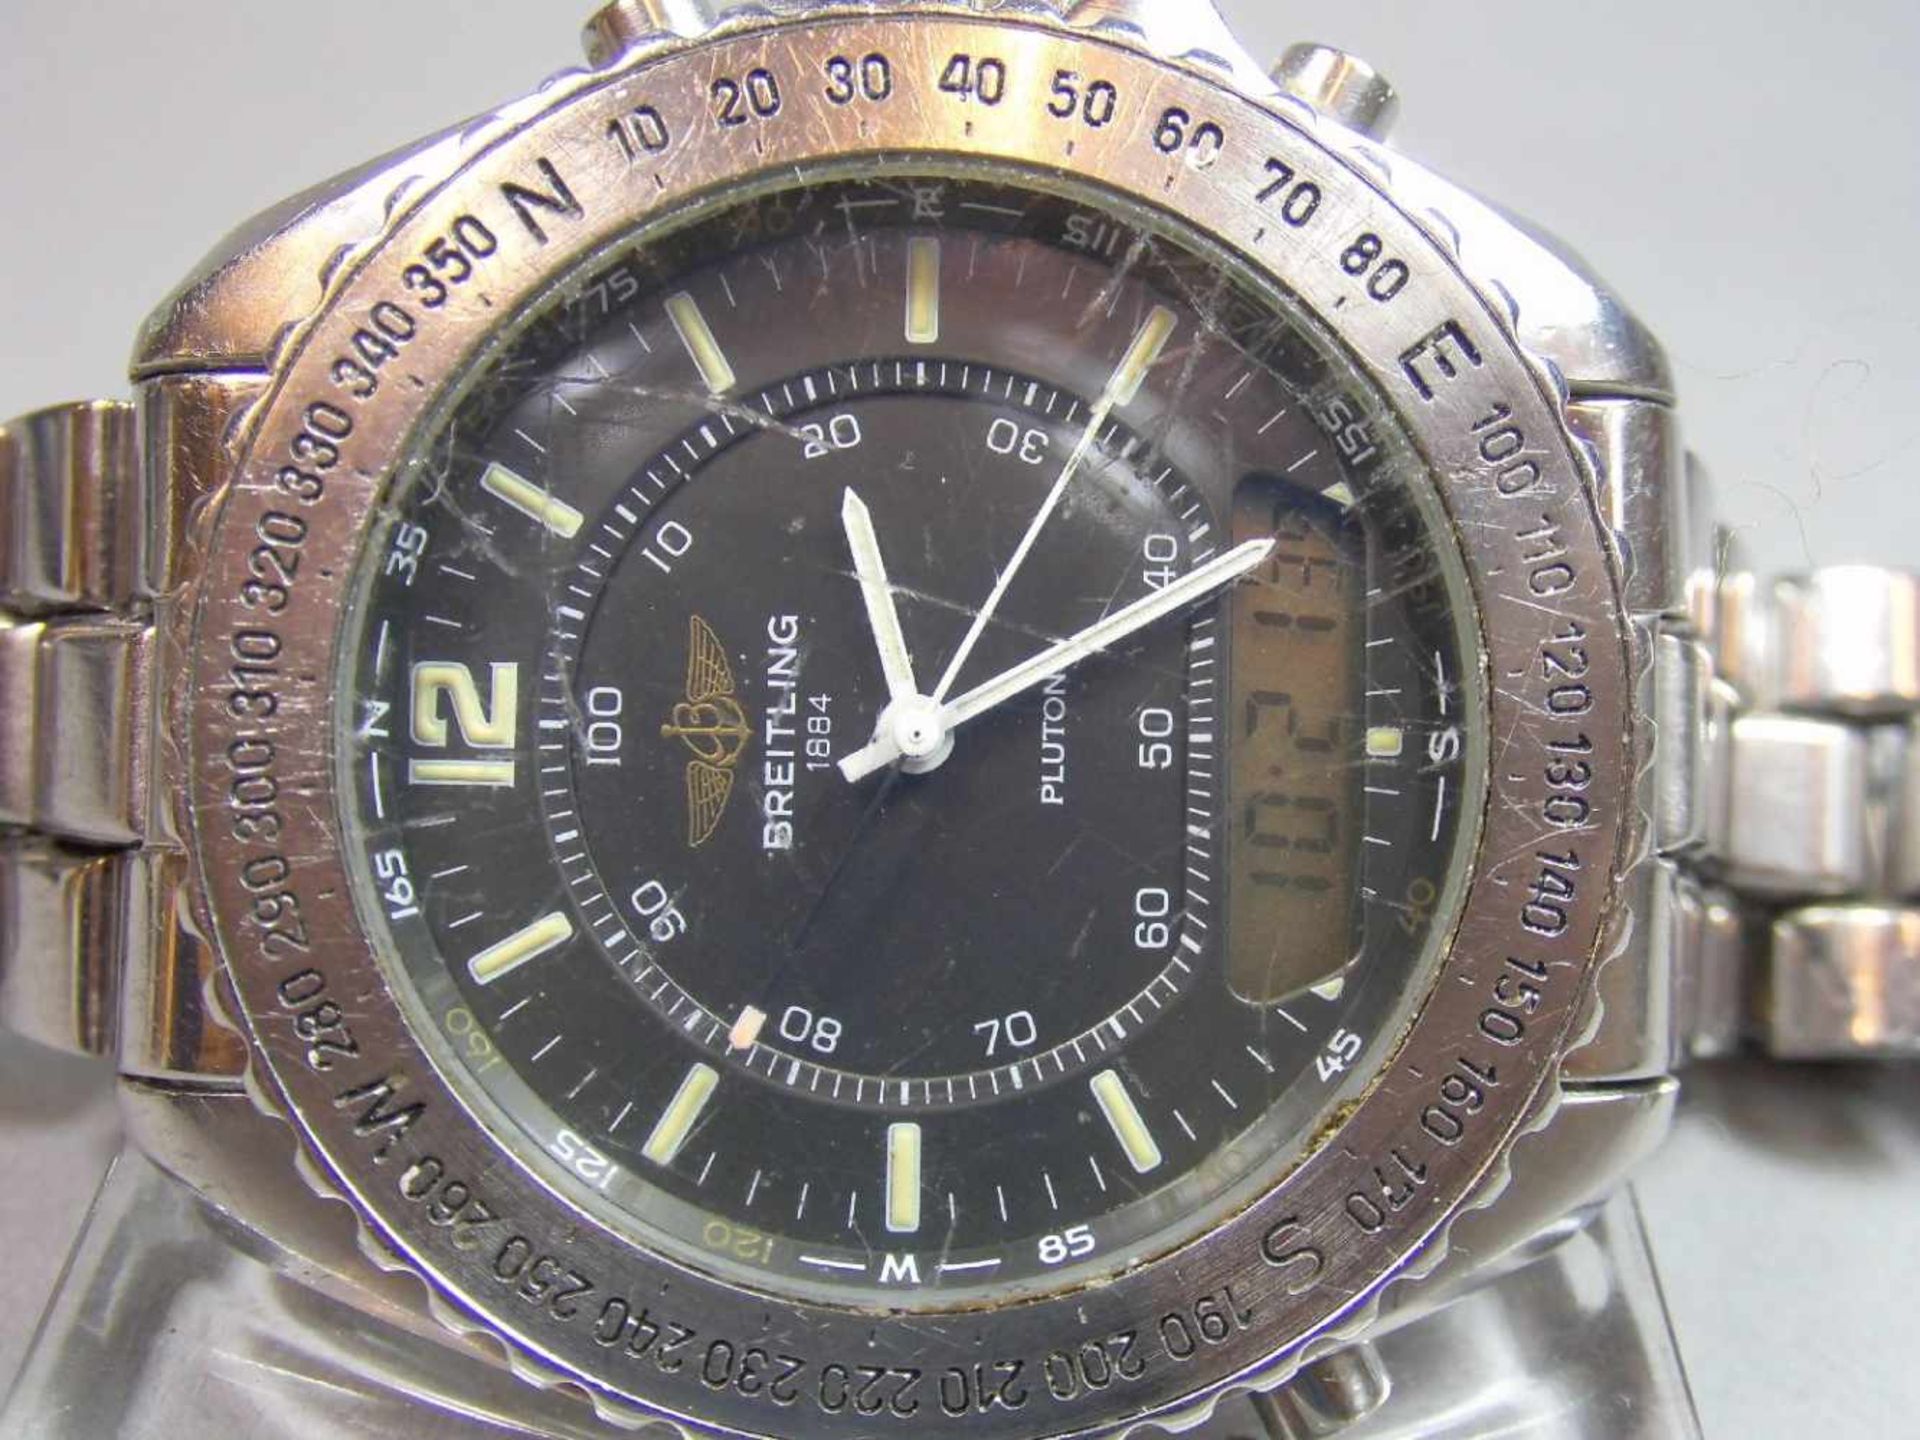 BREITLING "PLUTON" ARMBANDUHR / wristwatch, Quarz-Uhr, Schweiz. Stahlgehäuse mit drehbarer - Bild 4 aus 9